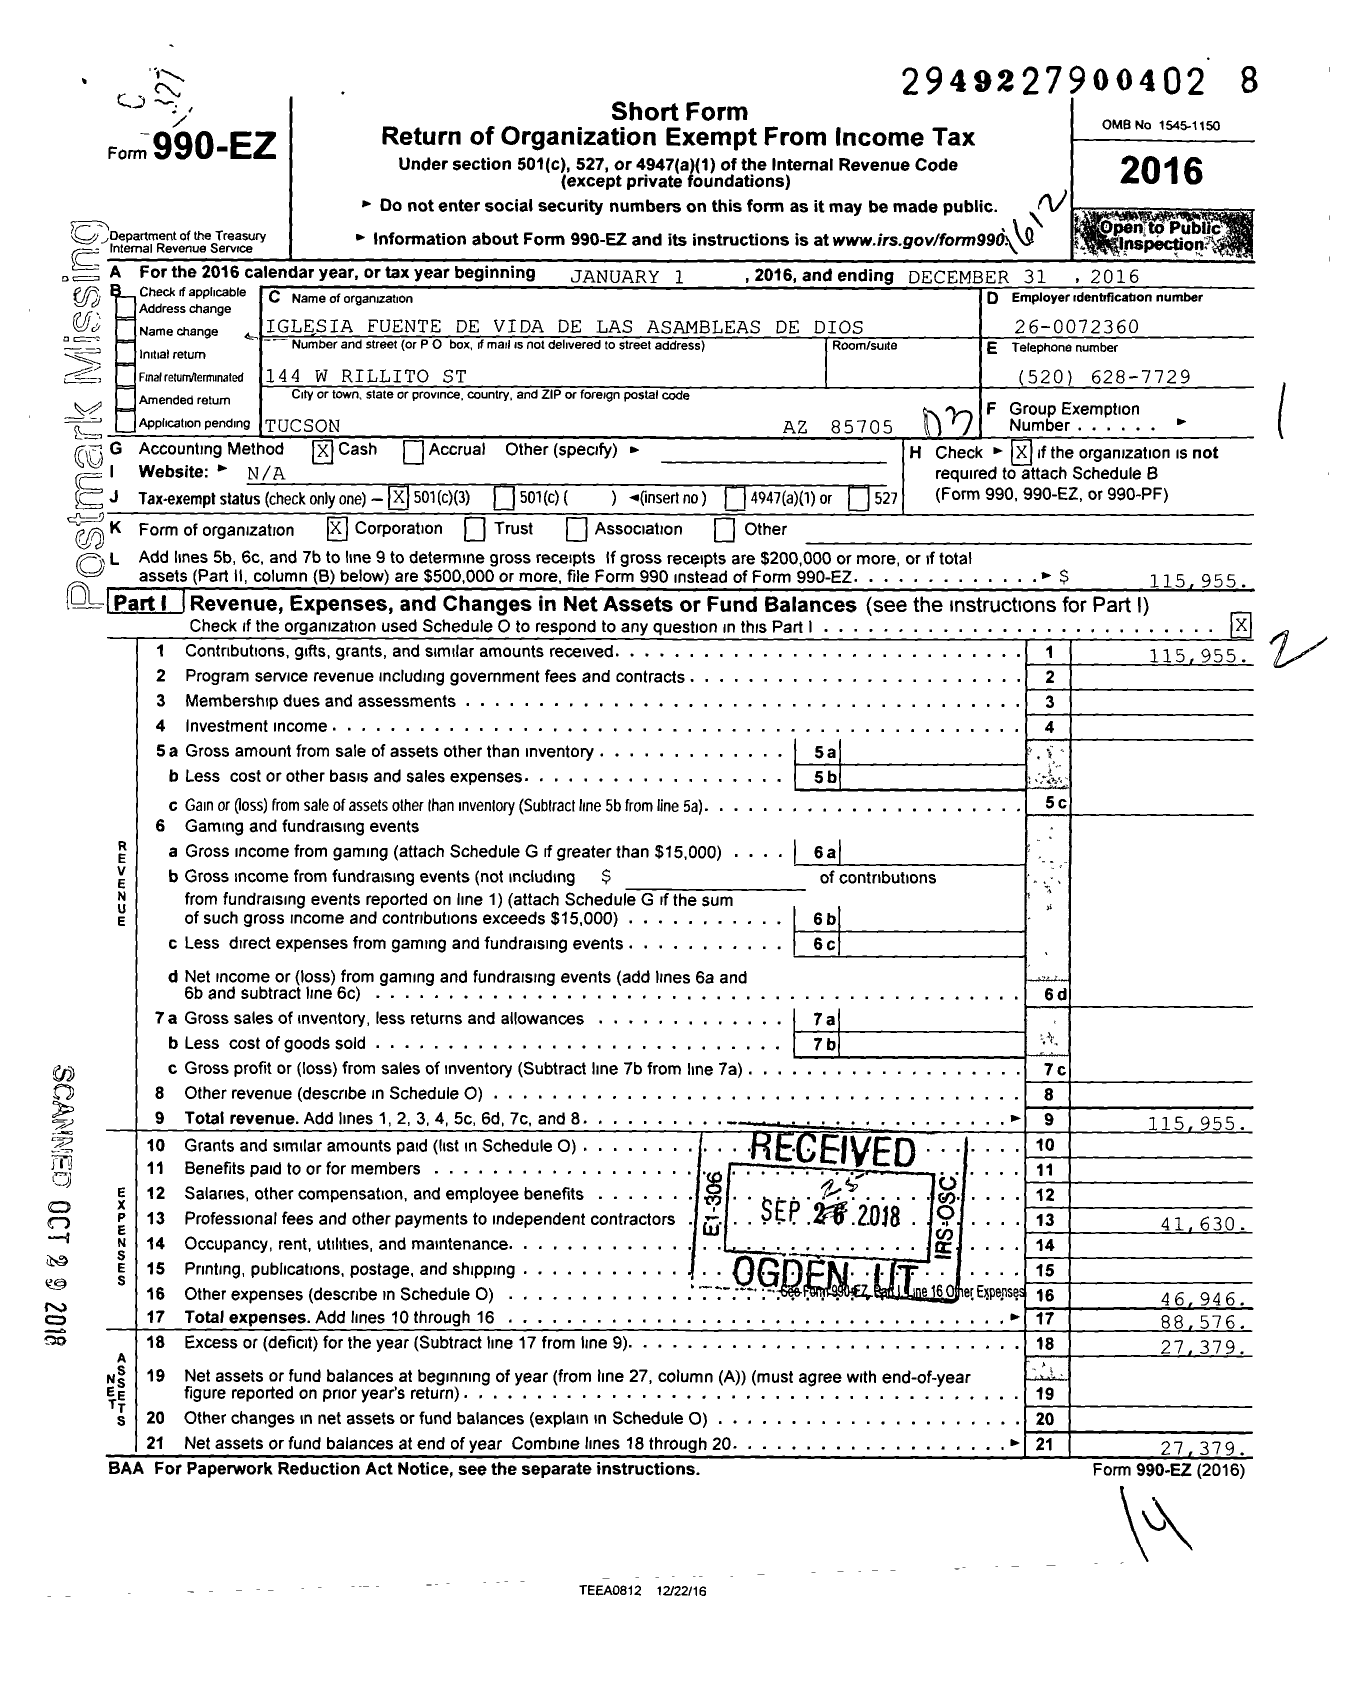 Image of first page of 2016 Form 990EZ for Iglesia Fuente de Vida de Las Asambleas de Dios